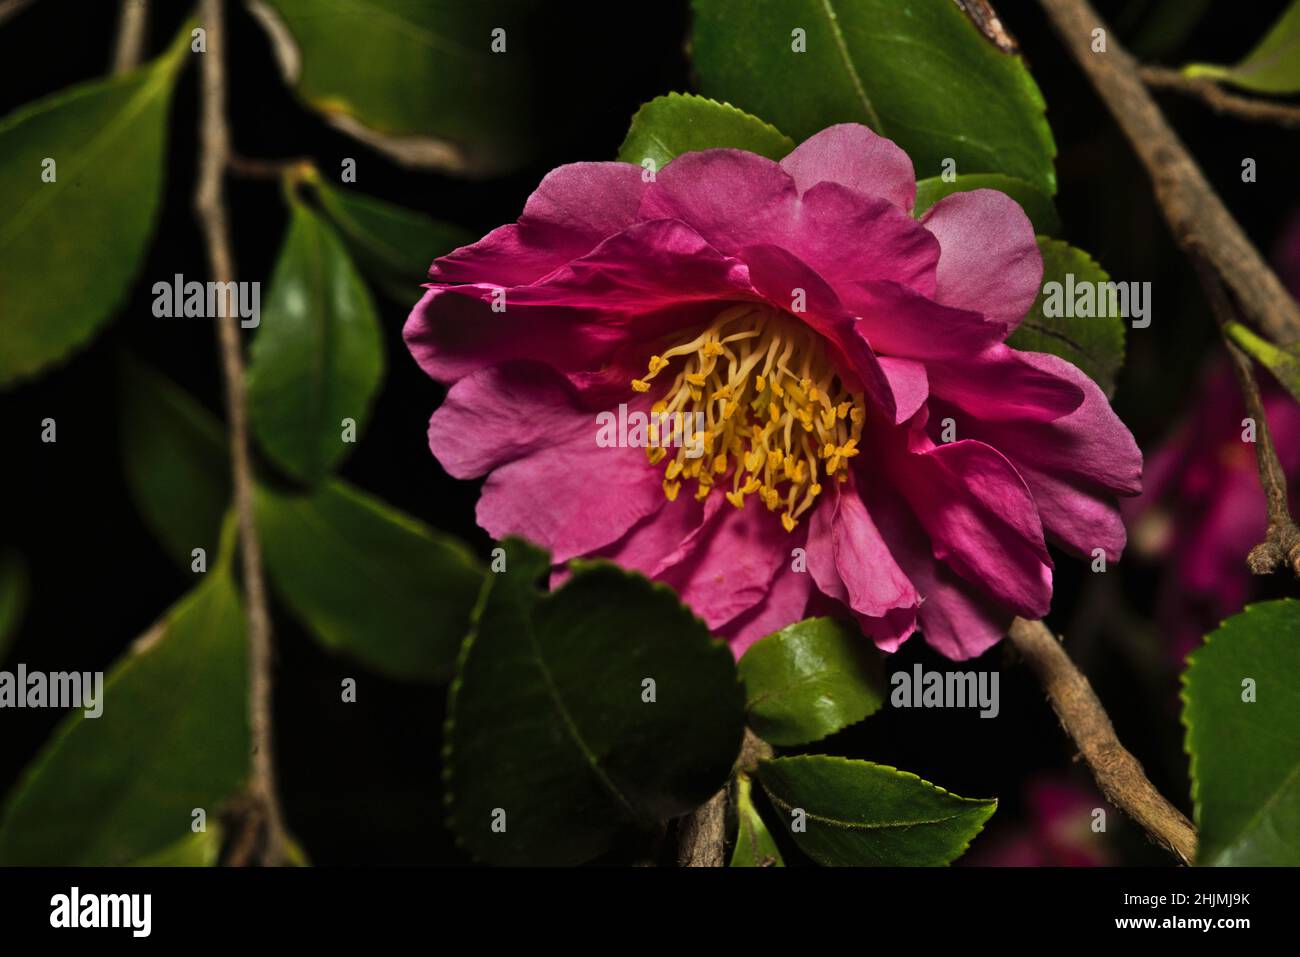 La bellezza della madre natura, abbonda nell'albero fiorito della camellia rosa. Ricco di clor di petalo rosa profondo, balza gialla e foglie verdi che aggiungono scorza e vita, Foto Stock